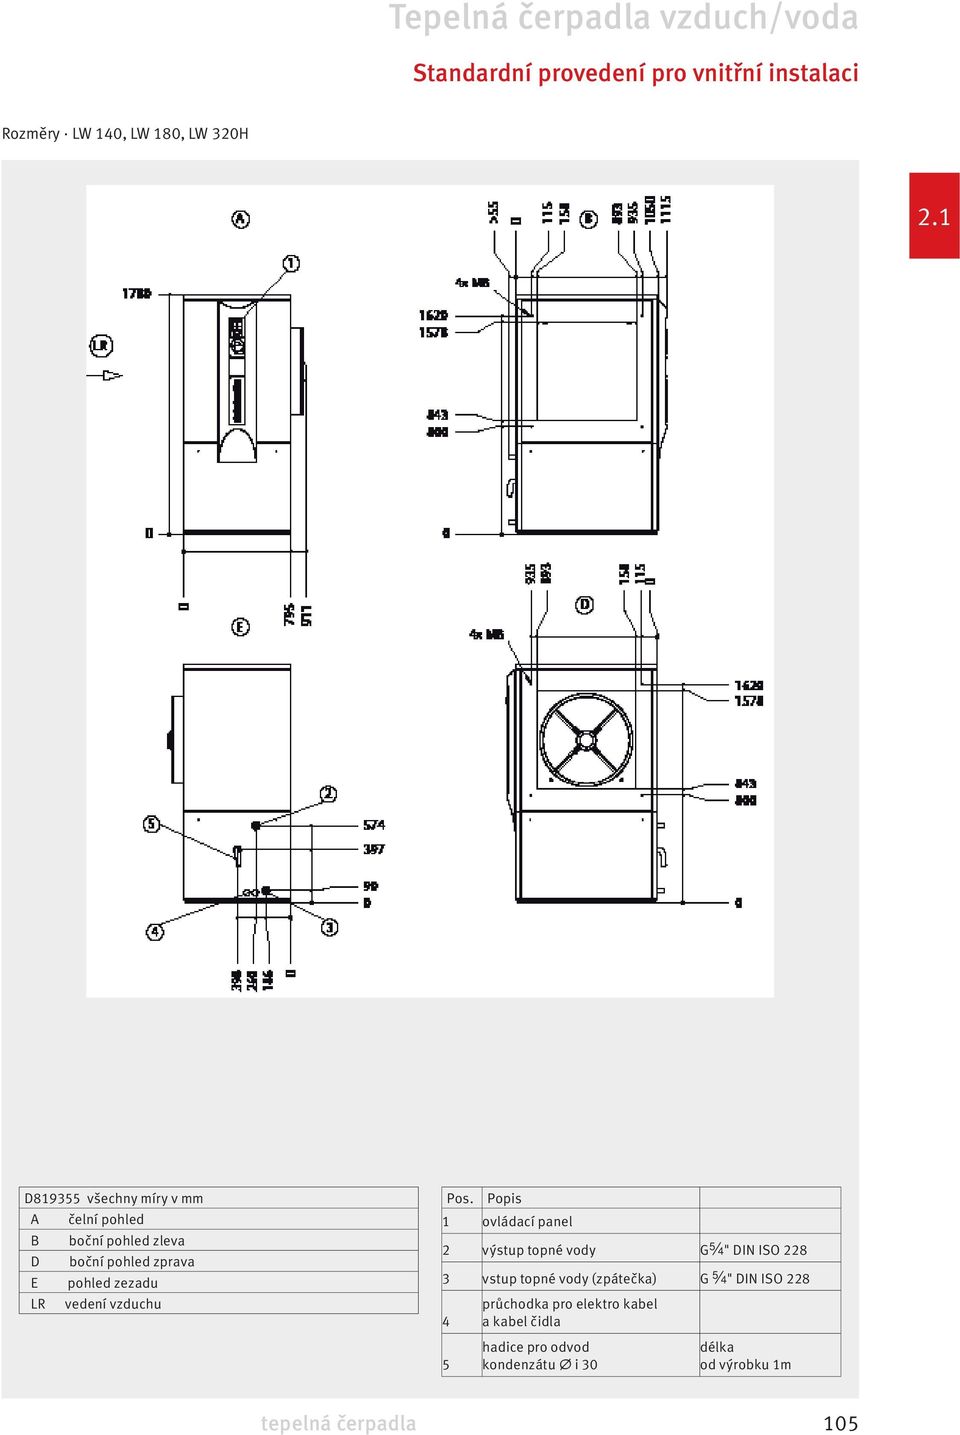 Popis 1 ovládací panel 2 výstup topné vody G " DIN ISO 228 3 vstup topné vody (zpátečka) G "